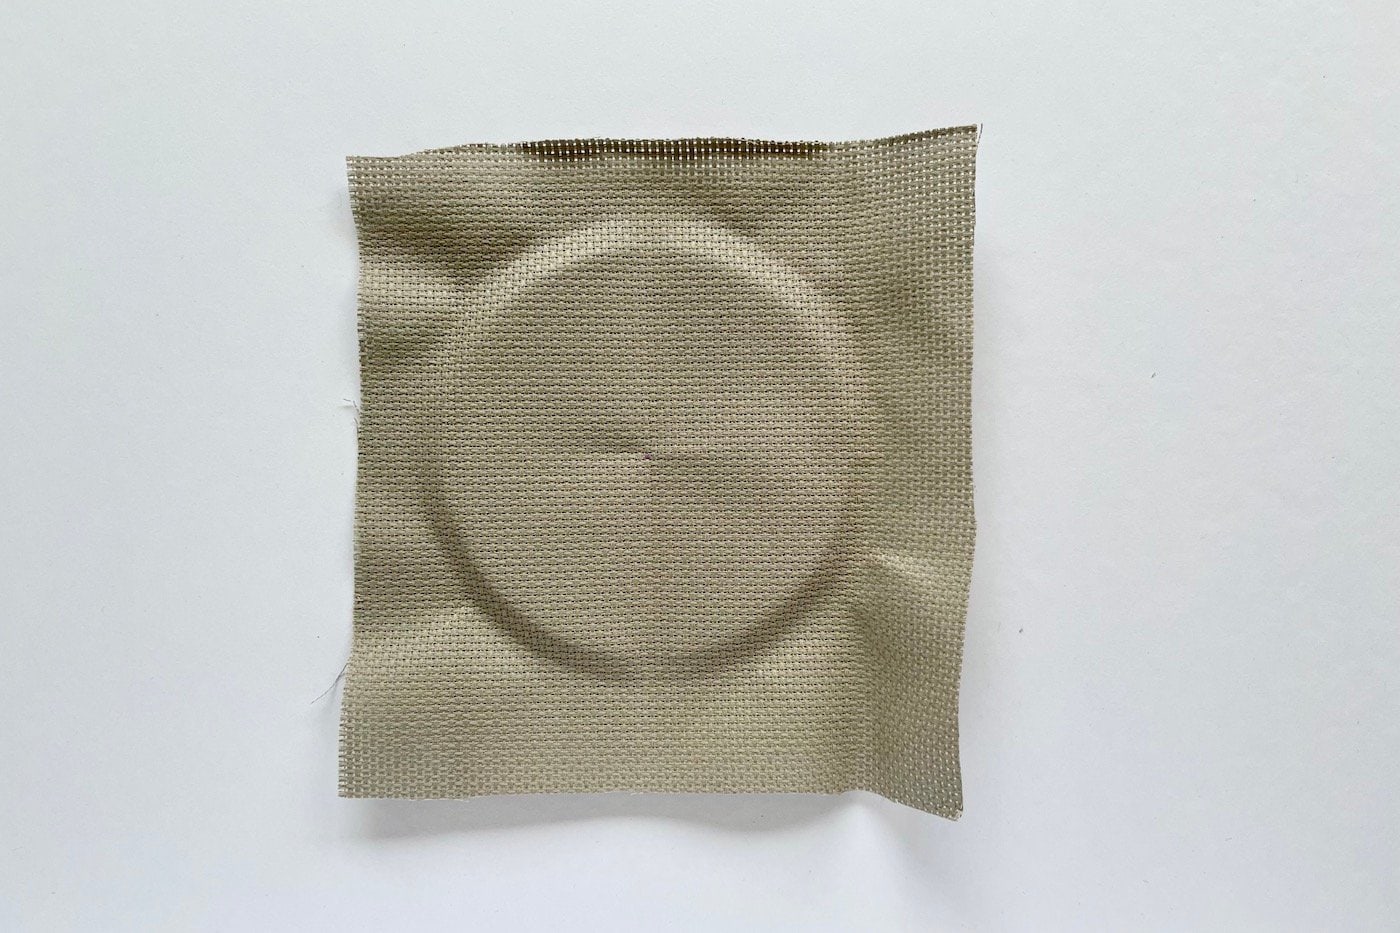 tissu beige sur une table blanche avec une impression de cercle